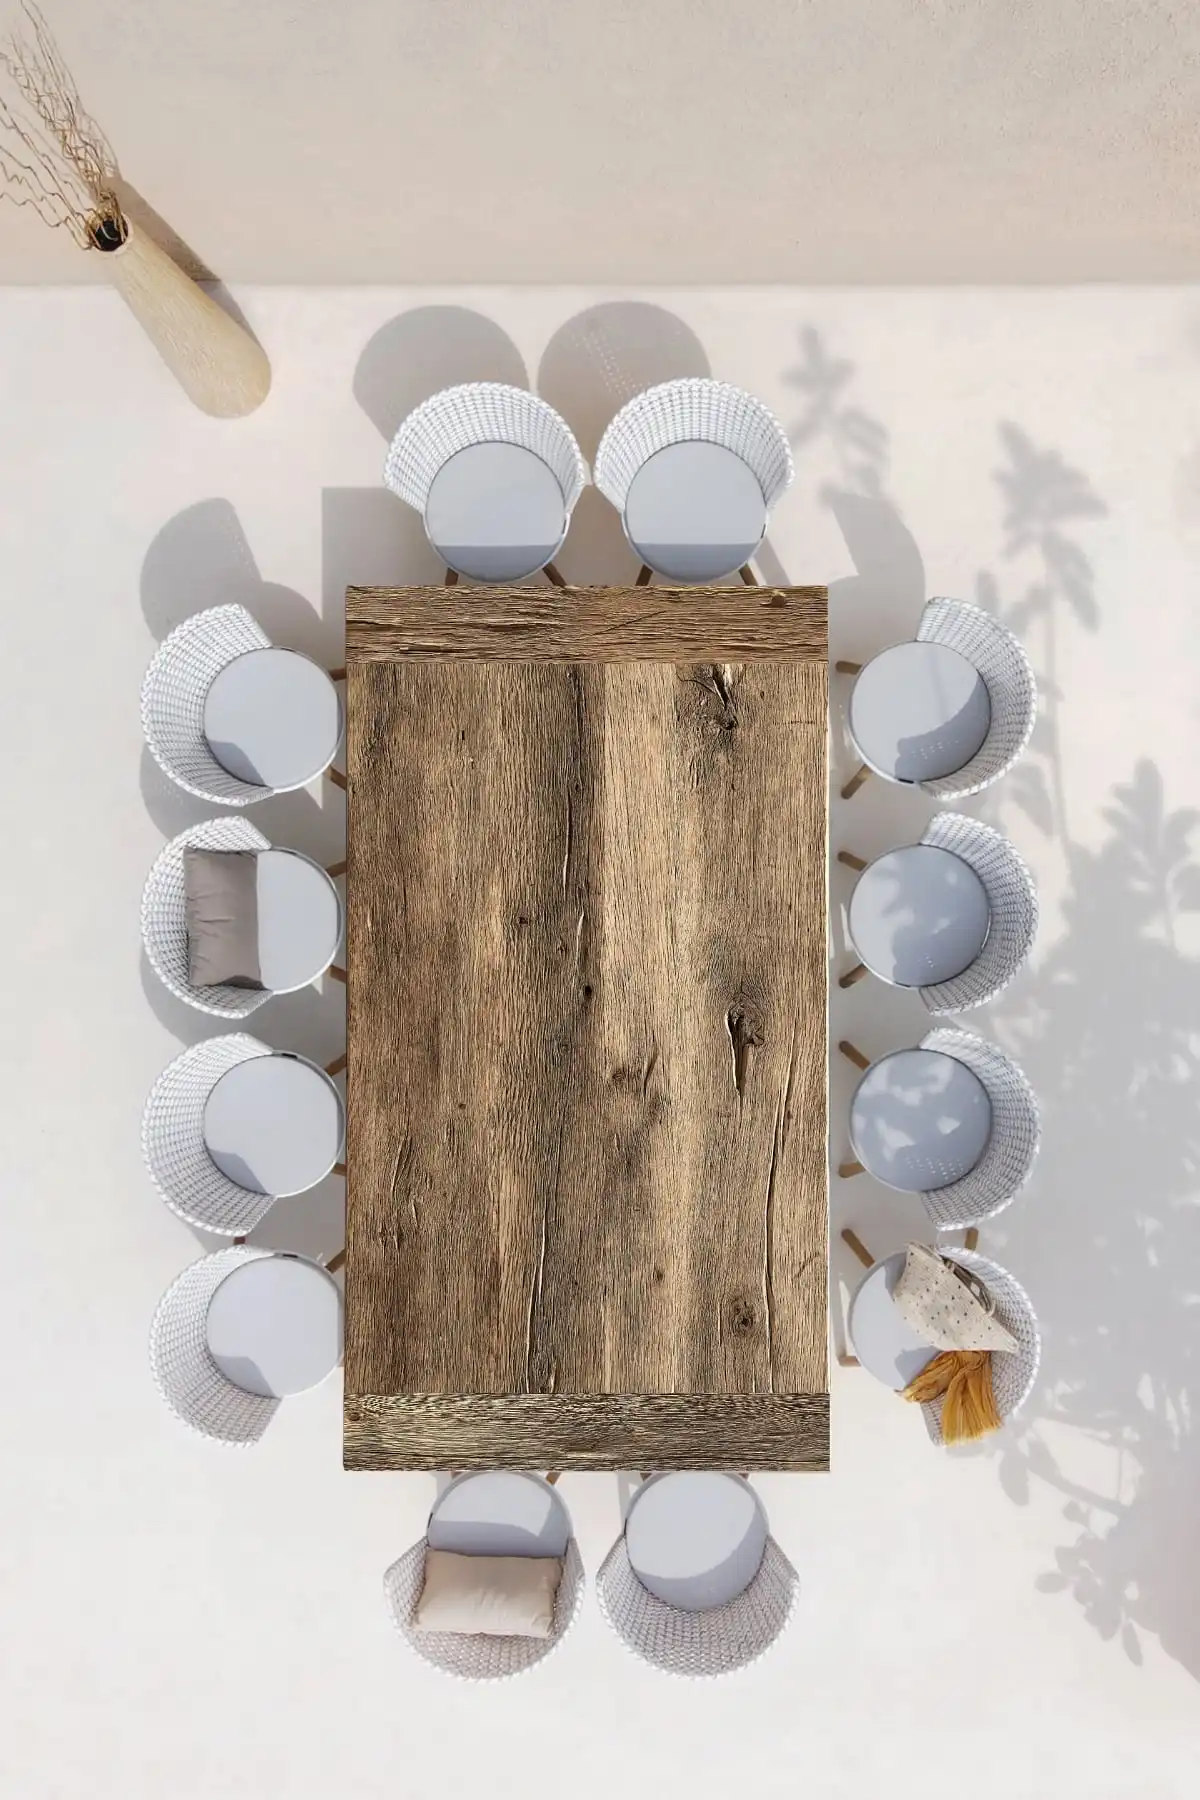 Vue aérienne d'une table rustique en bois brut disposée pour un repas avec des assiettes blanches texturées et des serviettes de table, le tout sur une nappe blanche épurée. Des ombres douces de feuillage se projettent sur la surface, évoquant une ambiance détendue en extérieur.